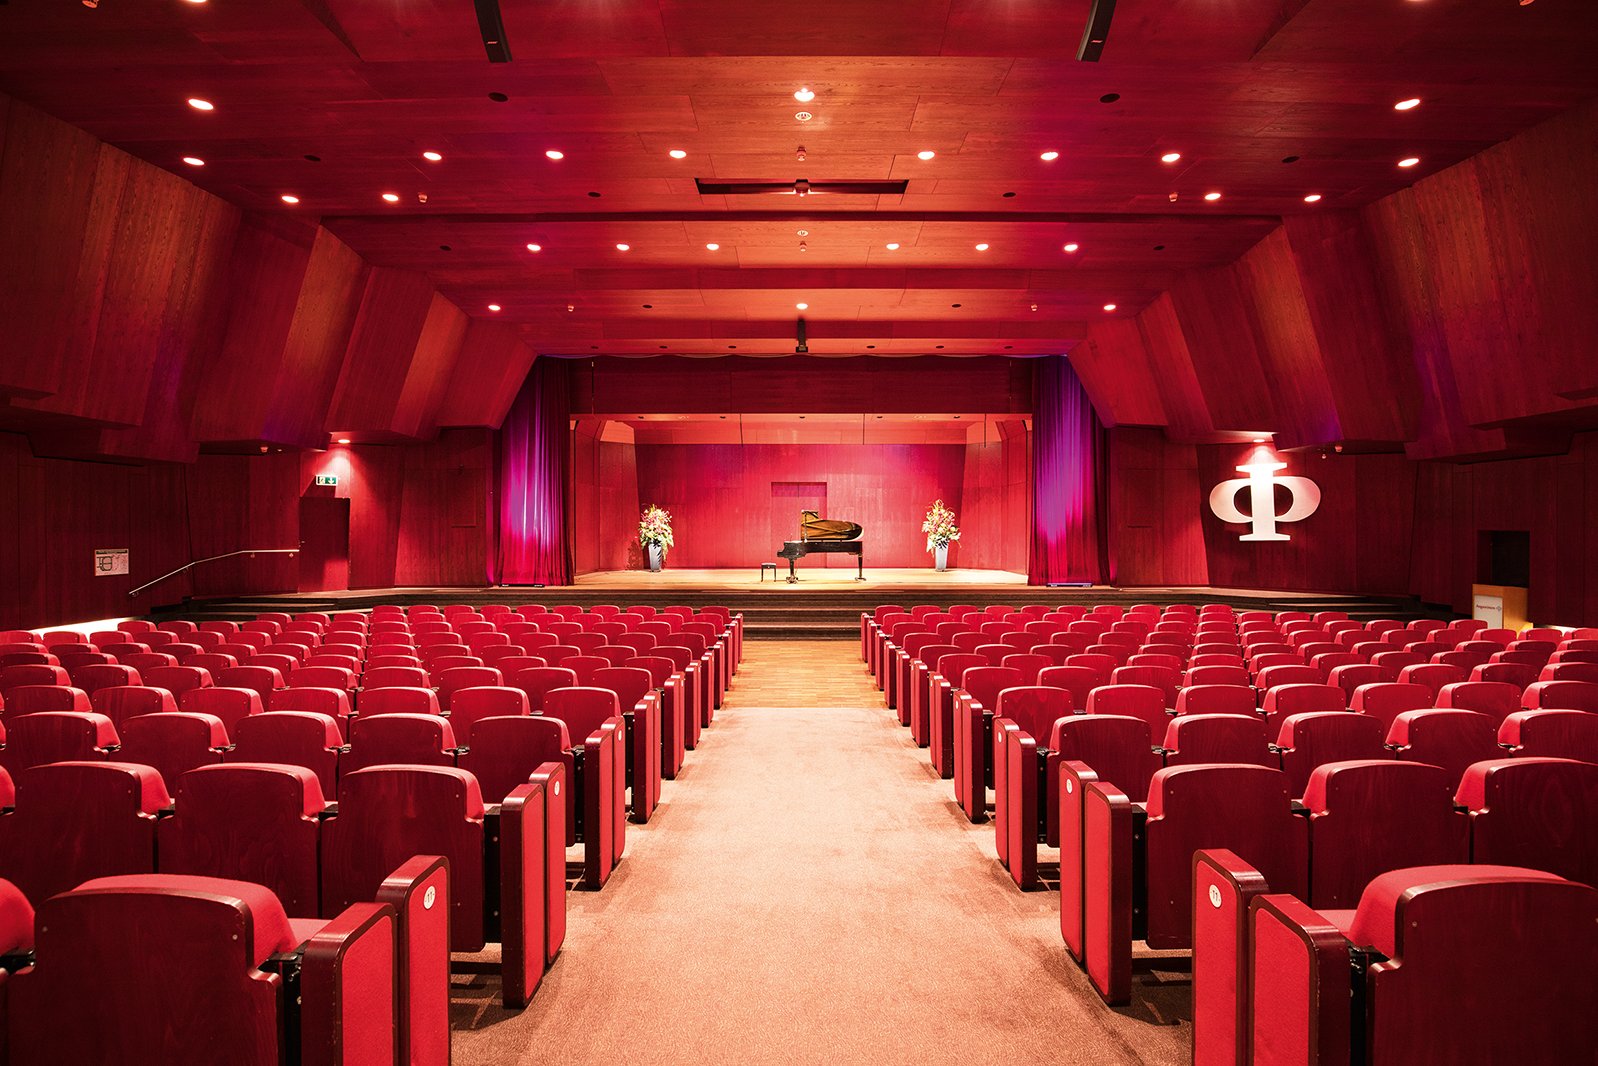 Der hauseigene Theater-, Kino- und Konzertsaal mit einer großen Bühne, Großbildleinwand und 369 Sitzplätzen ist zugleich auch ein kulturelles Zentrum des Stadtteils.